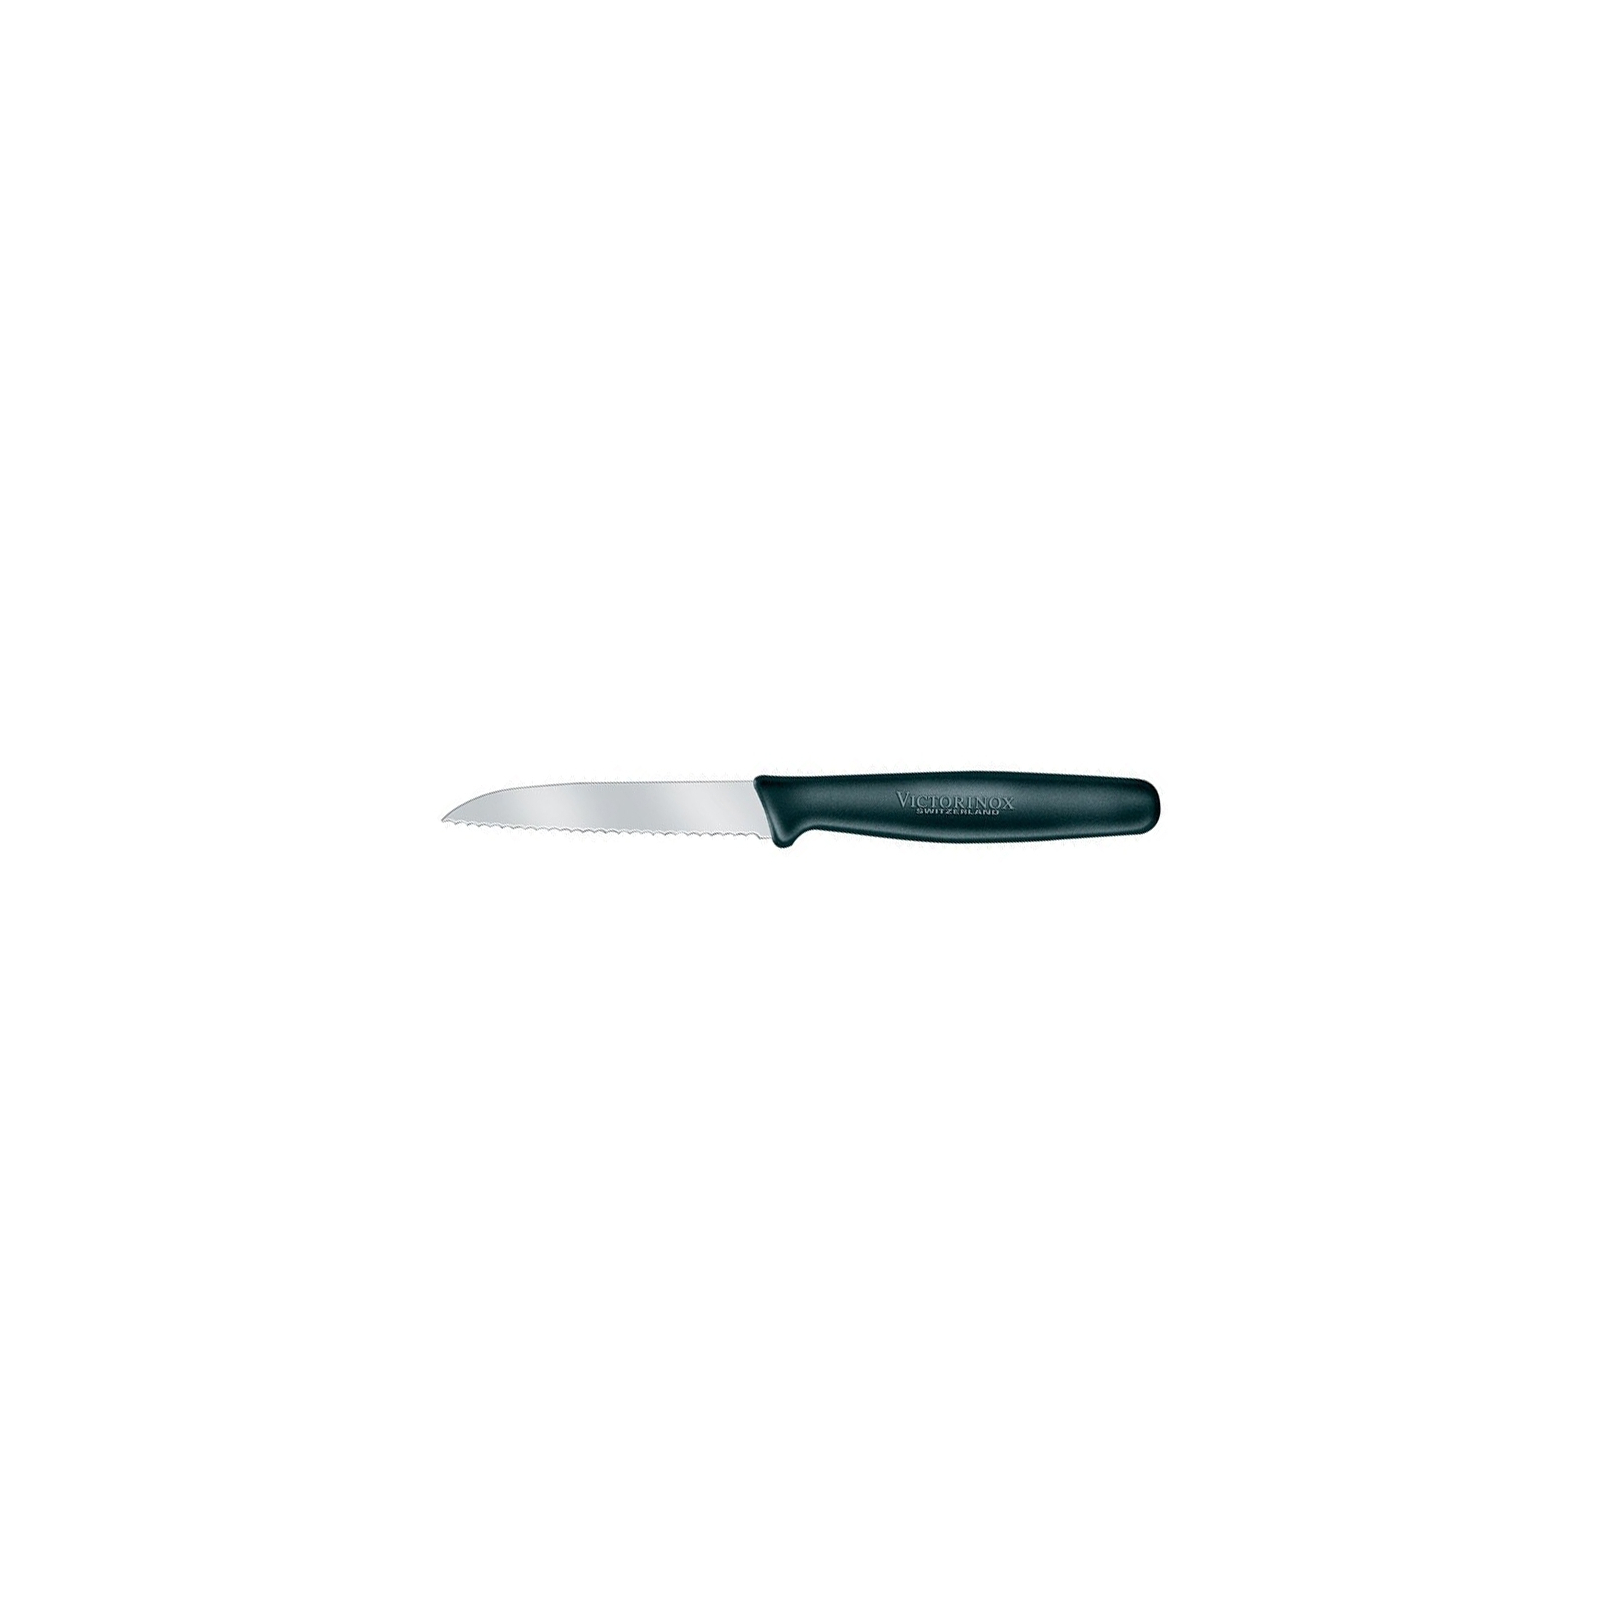 Кухонный нож Victorinox Standart 8 см, с волнистым лезвием, черный (5.0633)